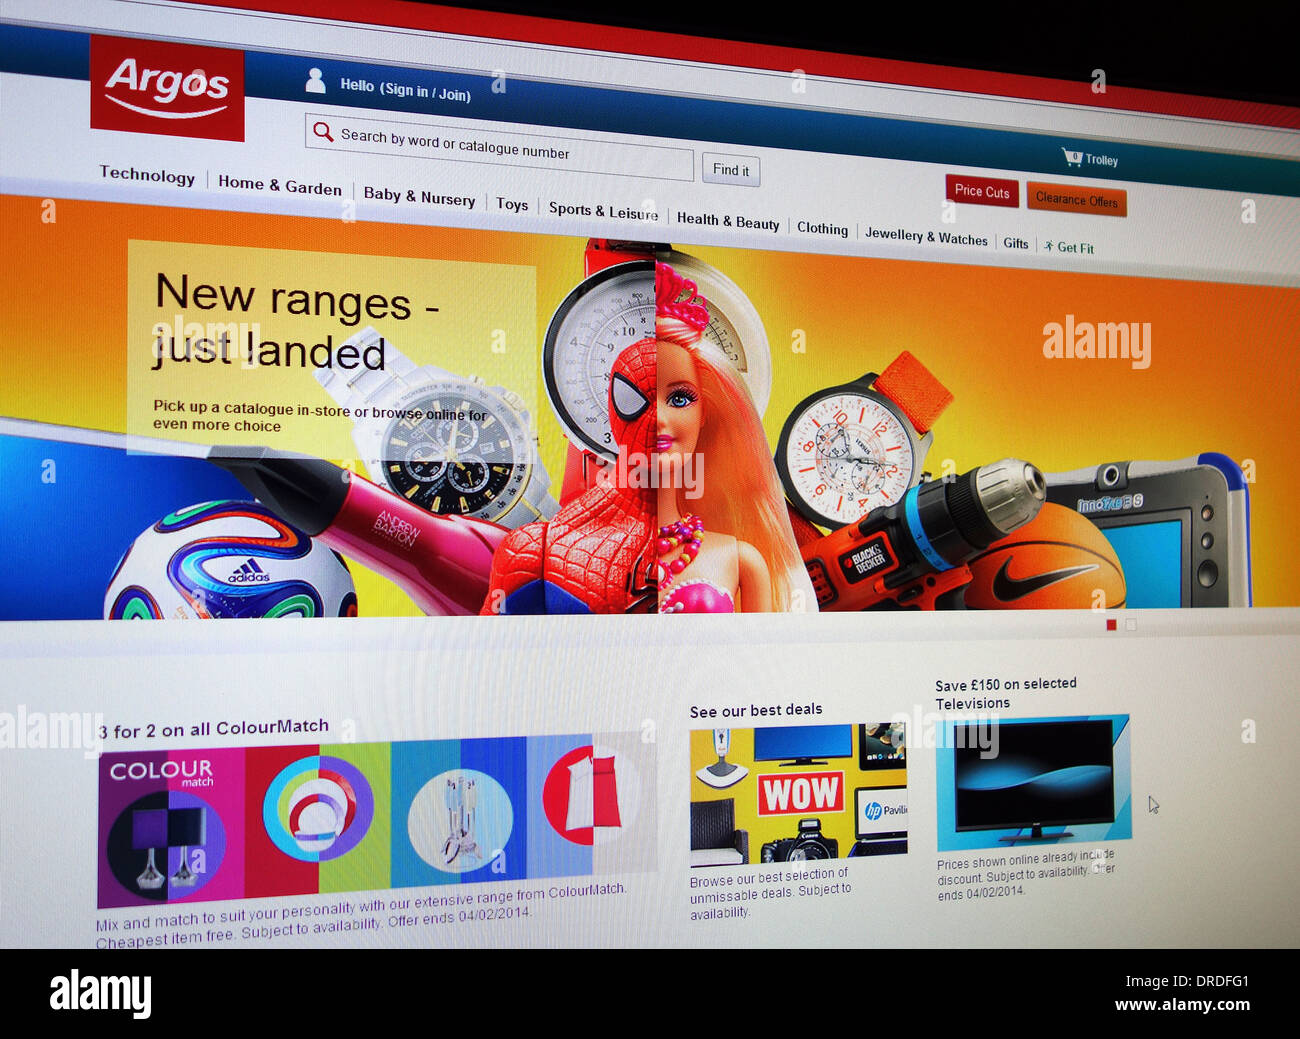 argos online shopping site Stock Photo